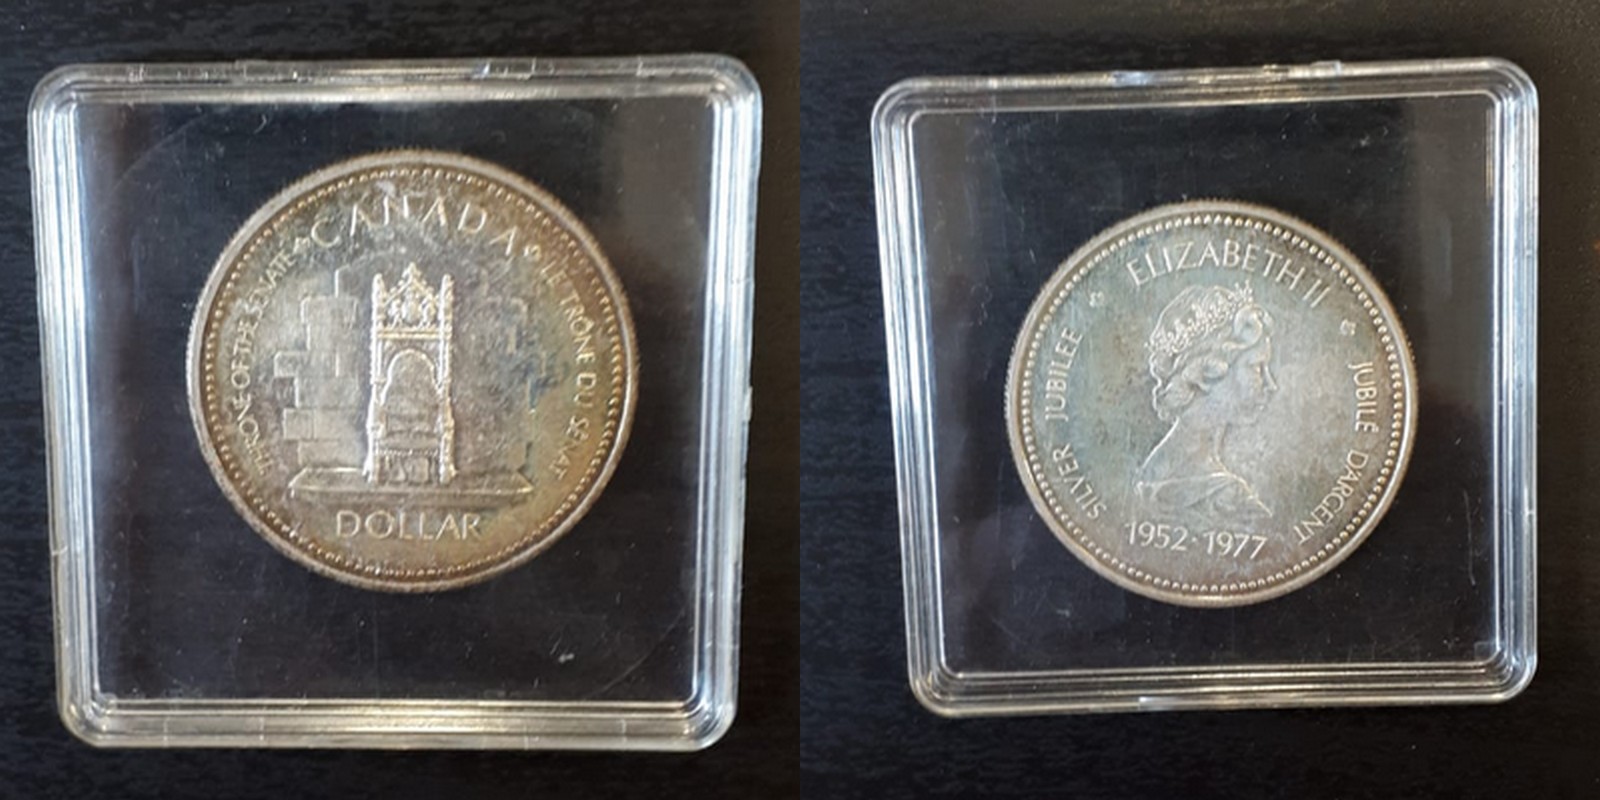  Kanada 1 Dollar  1977  Silber Jubiläum    FM-Frankfurt    Feinsilber: 11,66g   